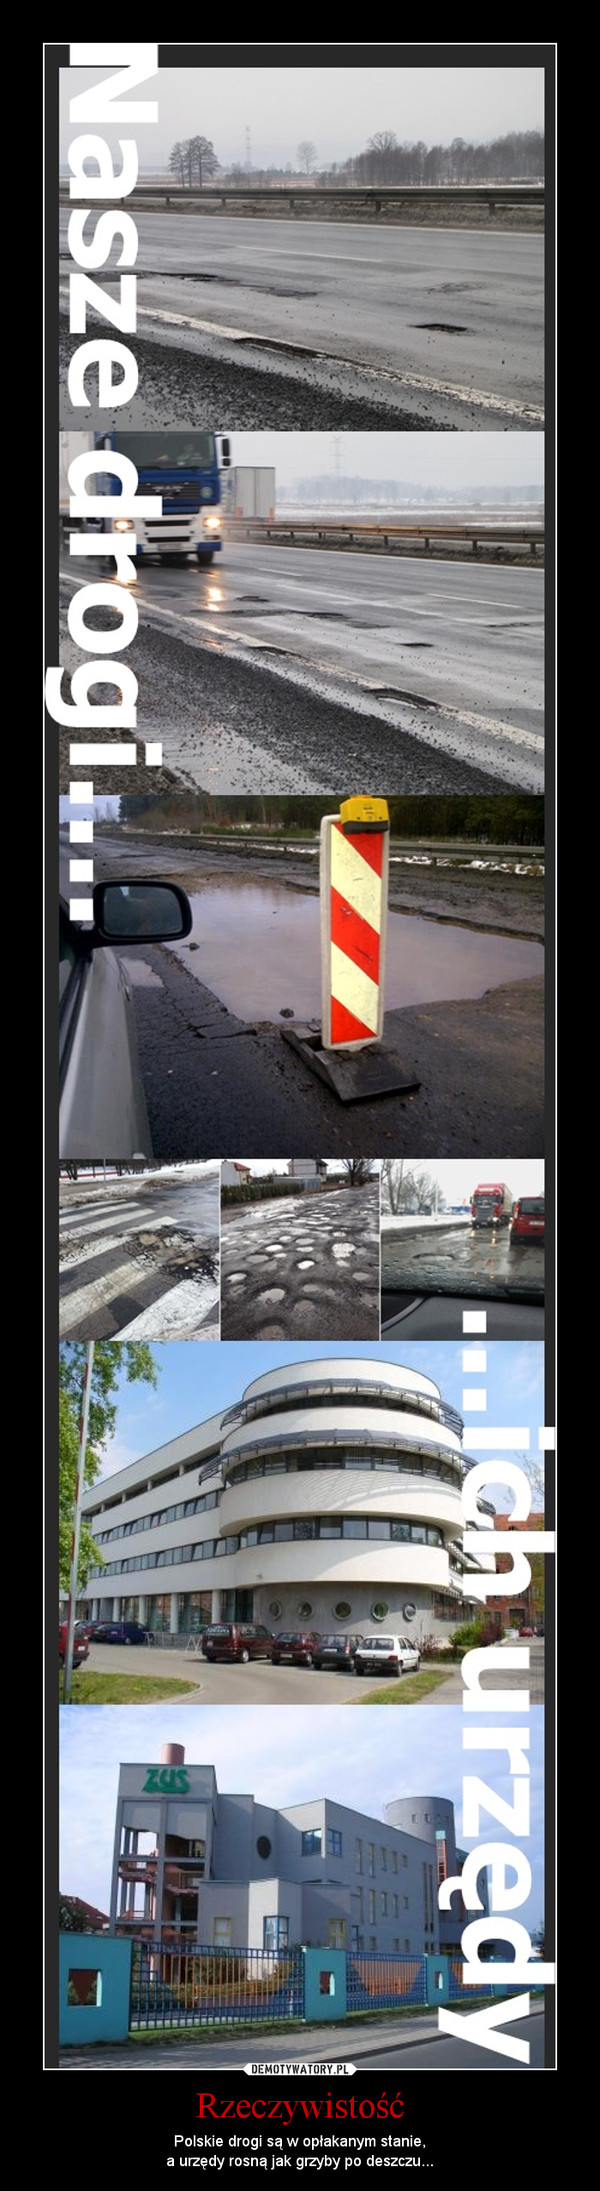 Rzeczywistość – Polskie drogi są w opłakanym stanie,a urzędy rosną jak grzyby po deszczu... 